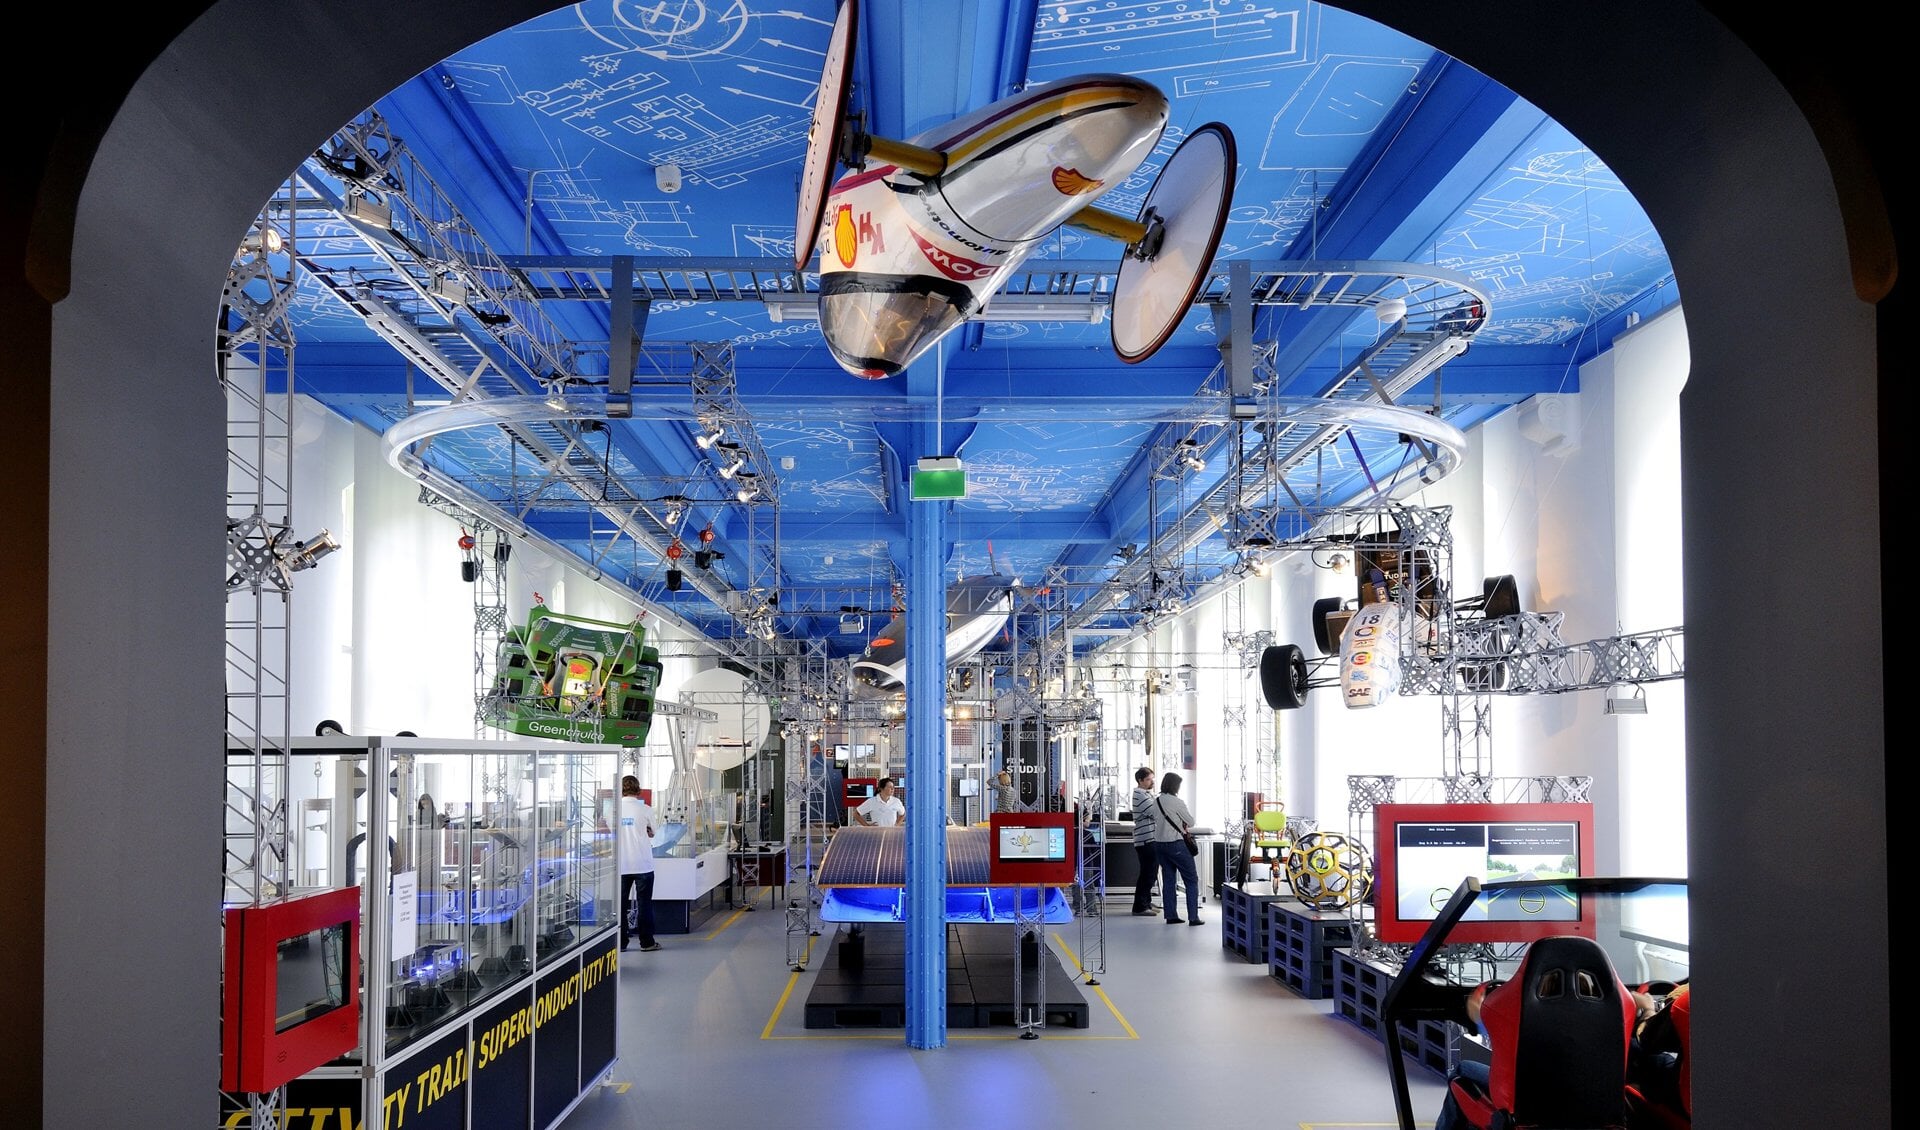 Met de ton aan prijzengeld zou het Science Centre een state-of-the-art Robotlab realiseren (Foto: Science Centre Delft)